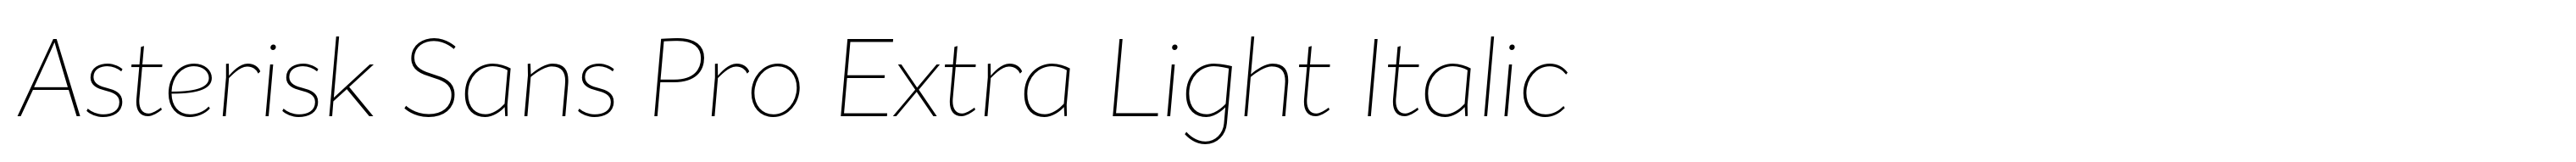 Asterisk Sans Pro Extra Light Italic